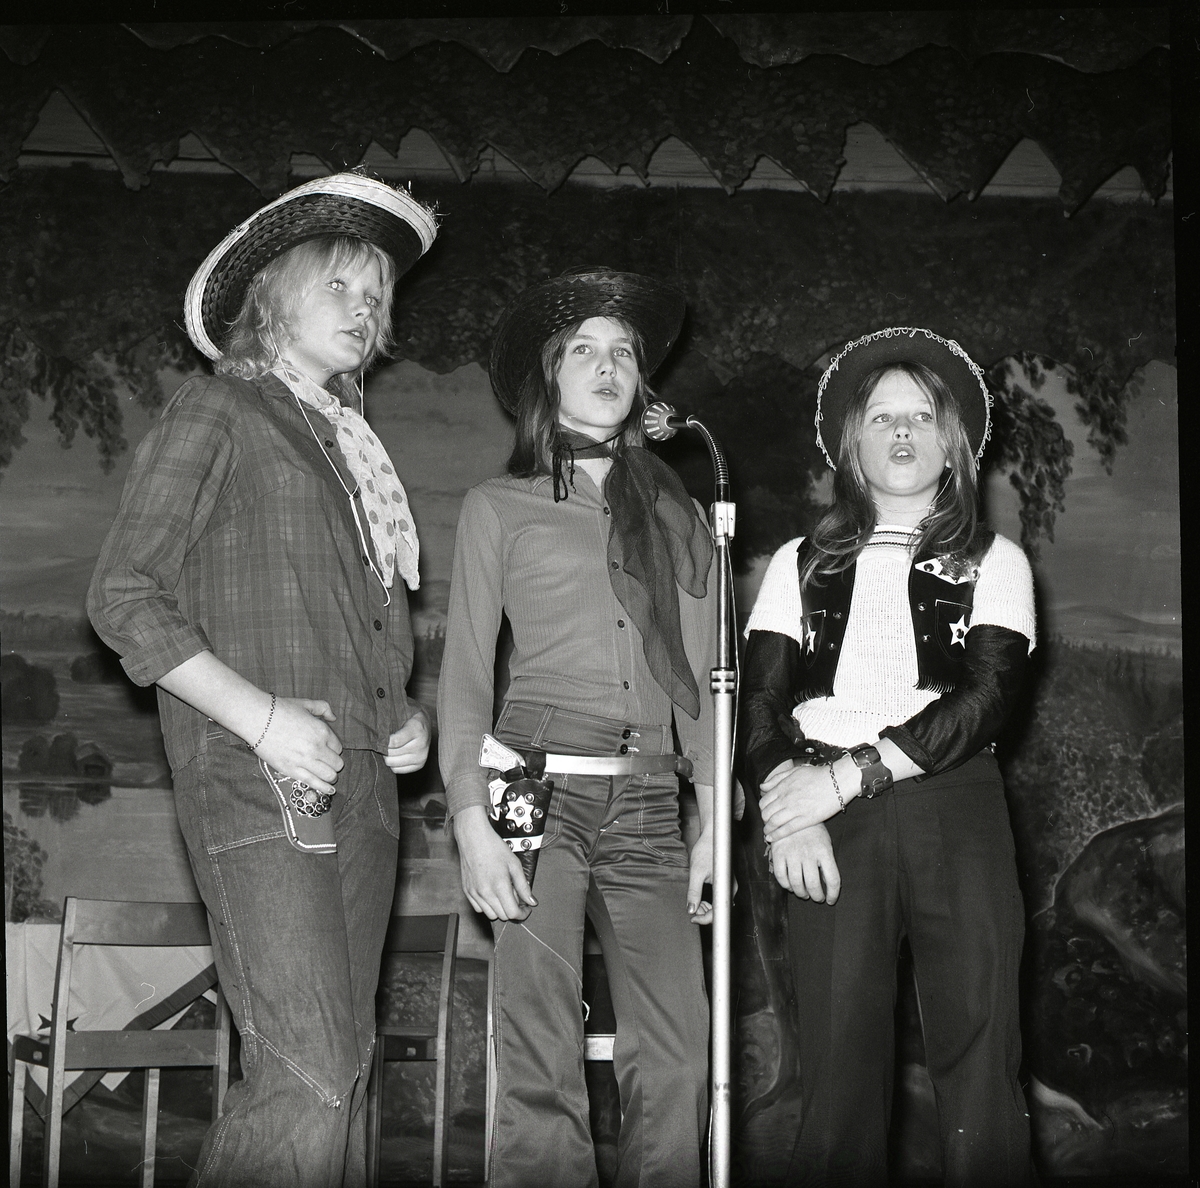 Tre flickor klädda i cowboykläder står på en scen och sjunger, 1972.